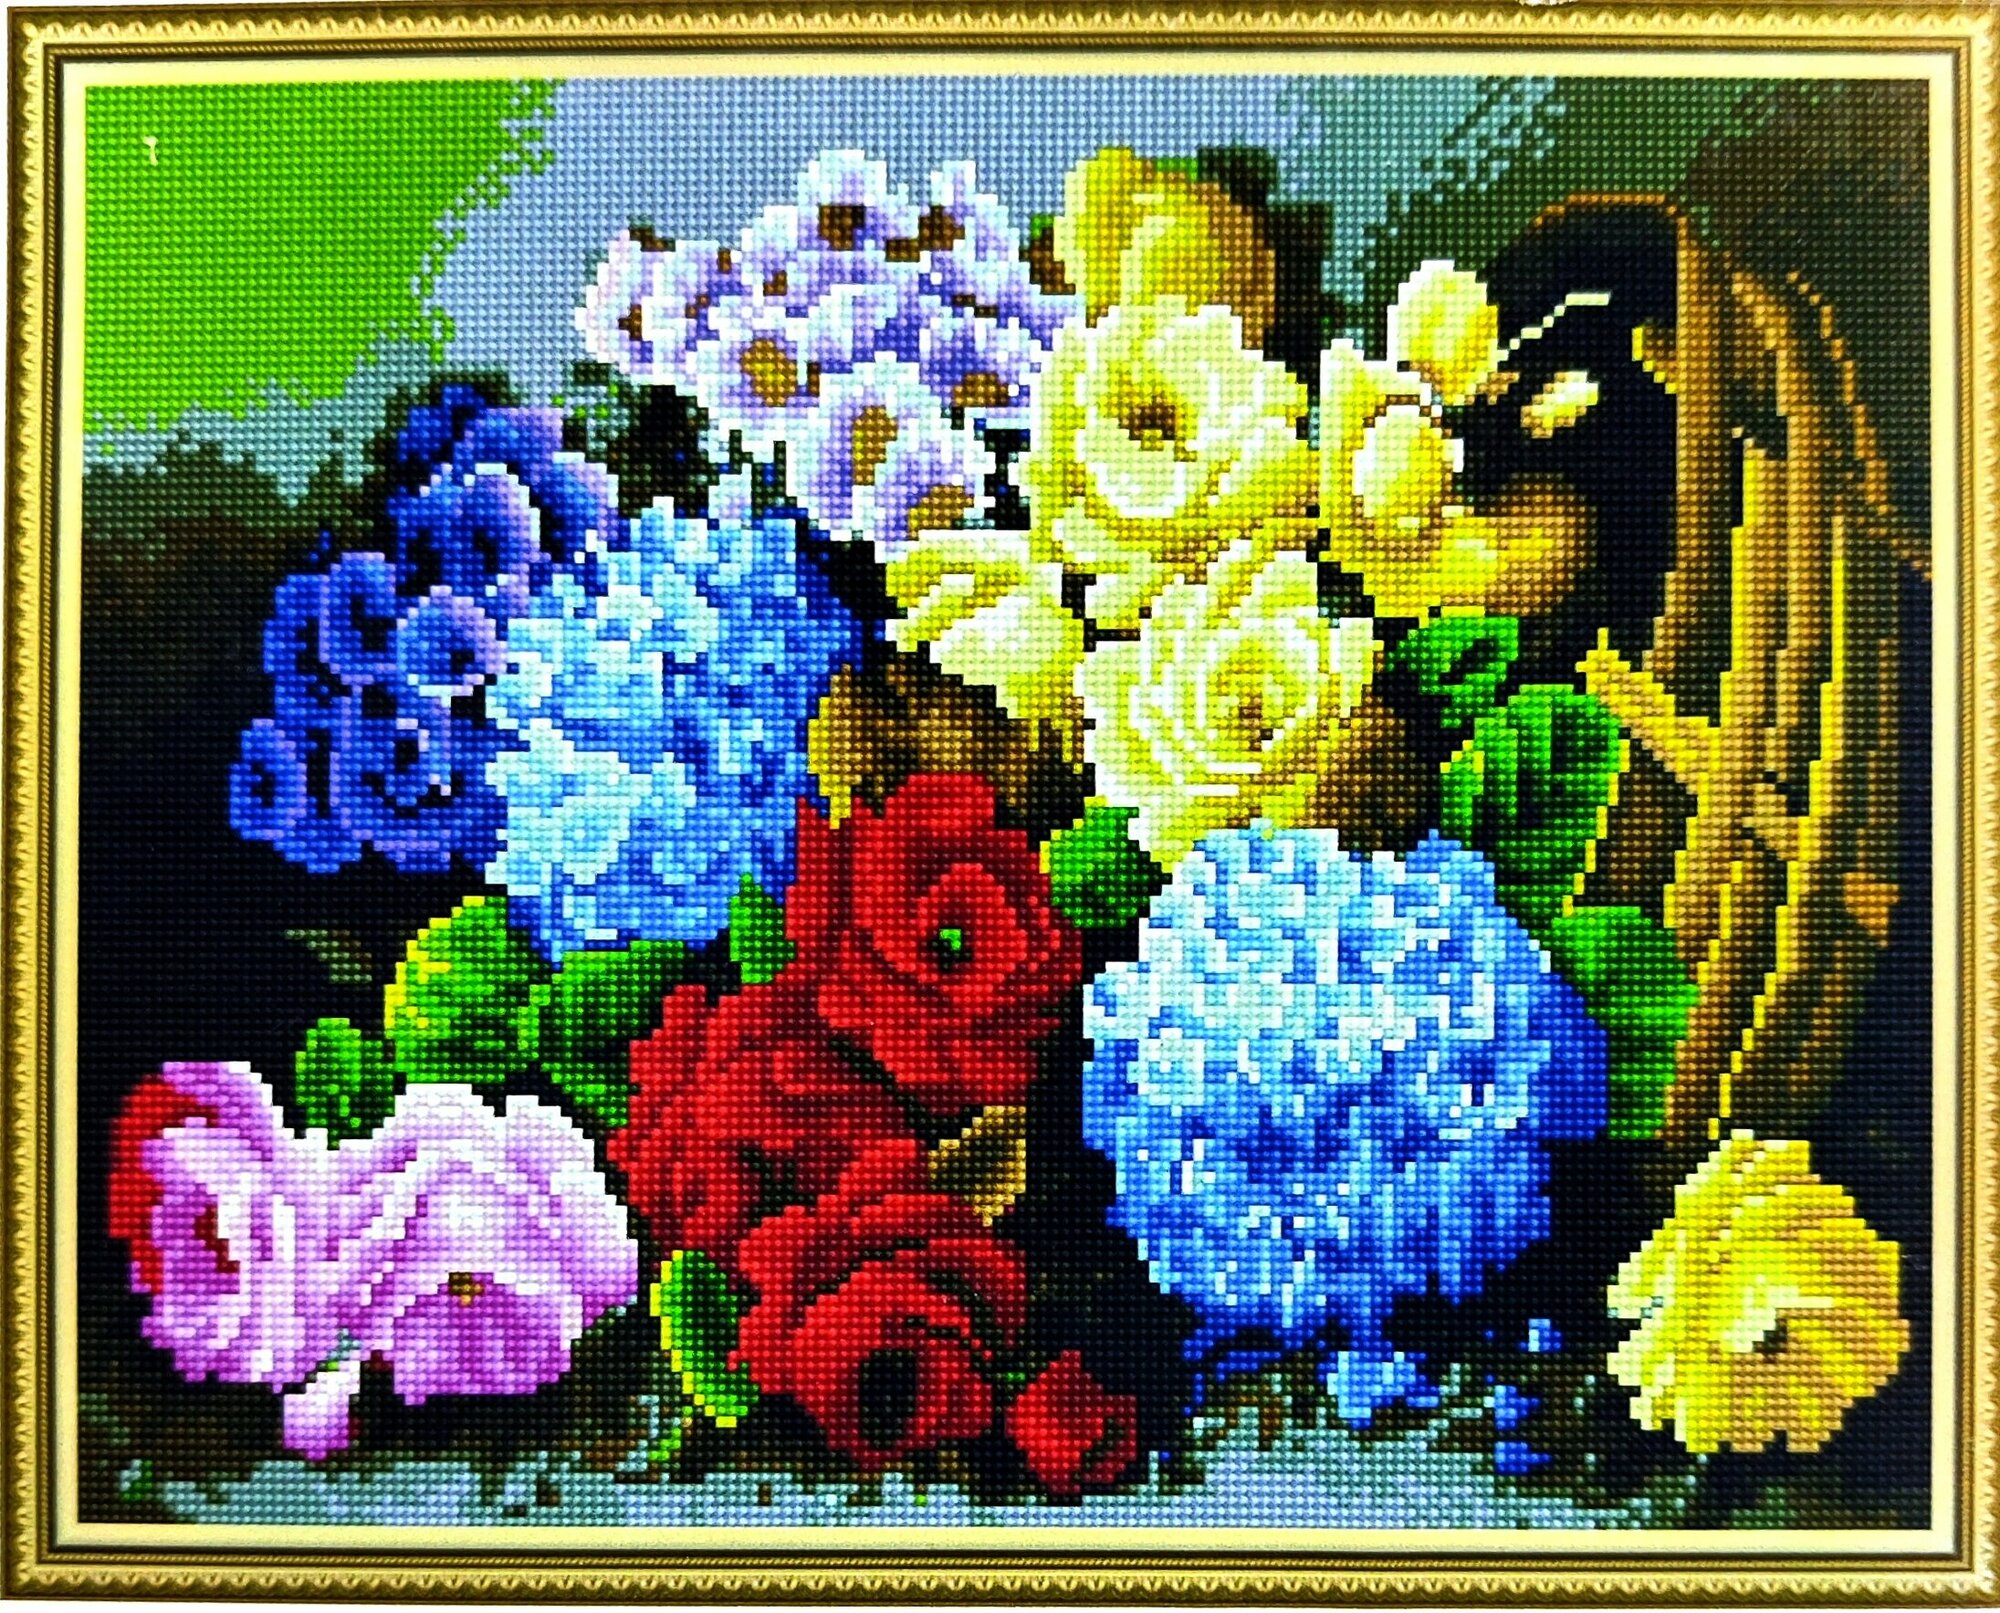 Алмазная мозаика 40x50см круглые стразы сирень, пионы, ягоды, фрукты, архидея, розы, натюрморт, полевые цветы, маки, ромашки